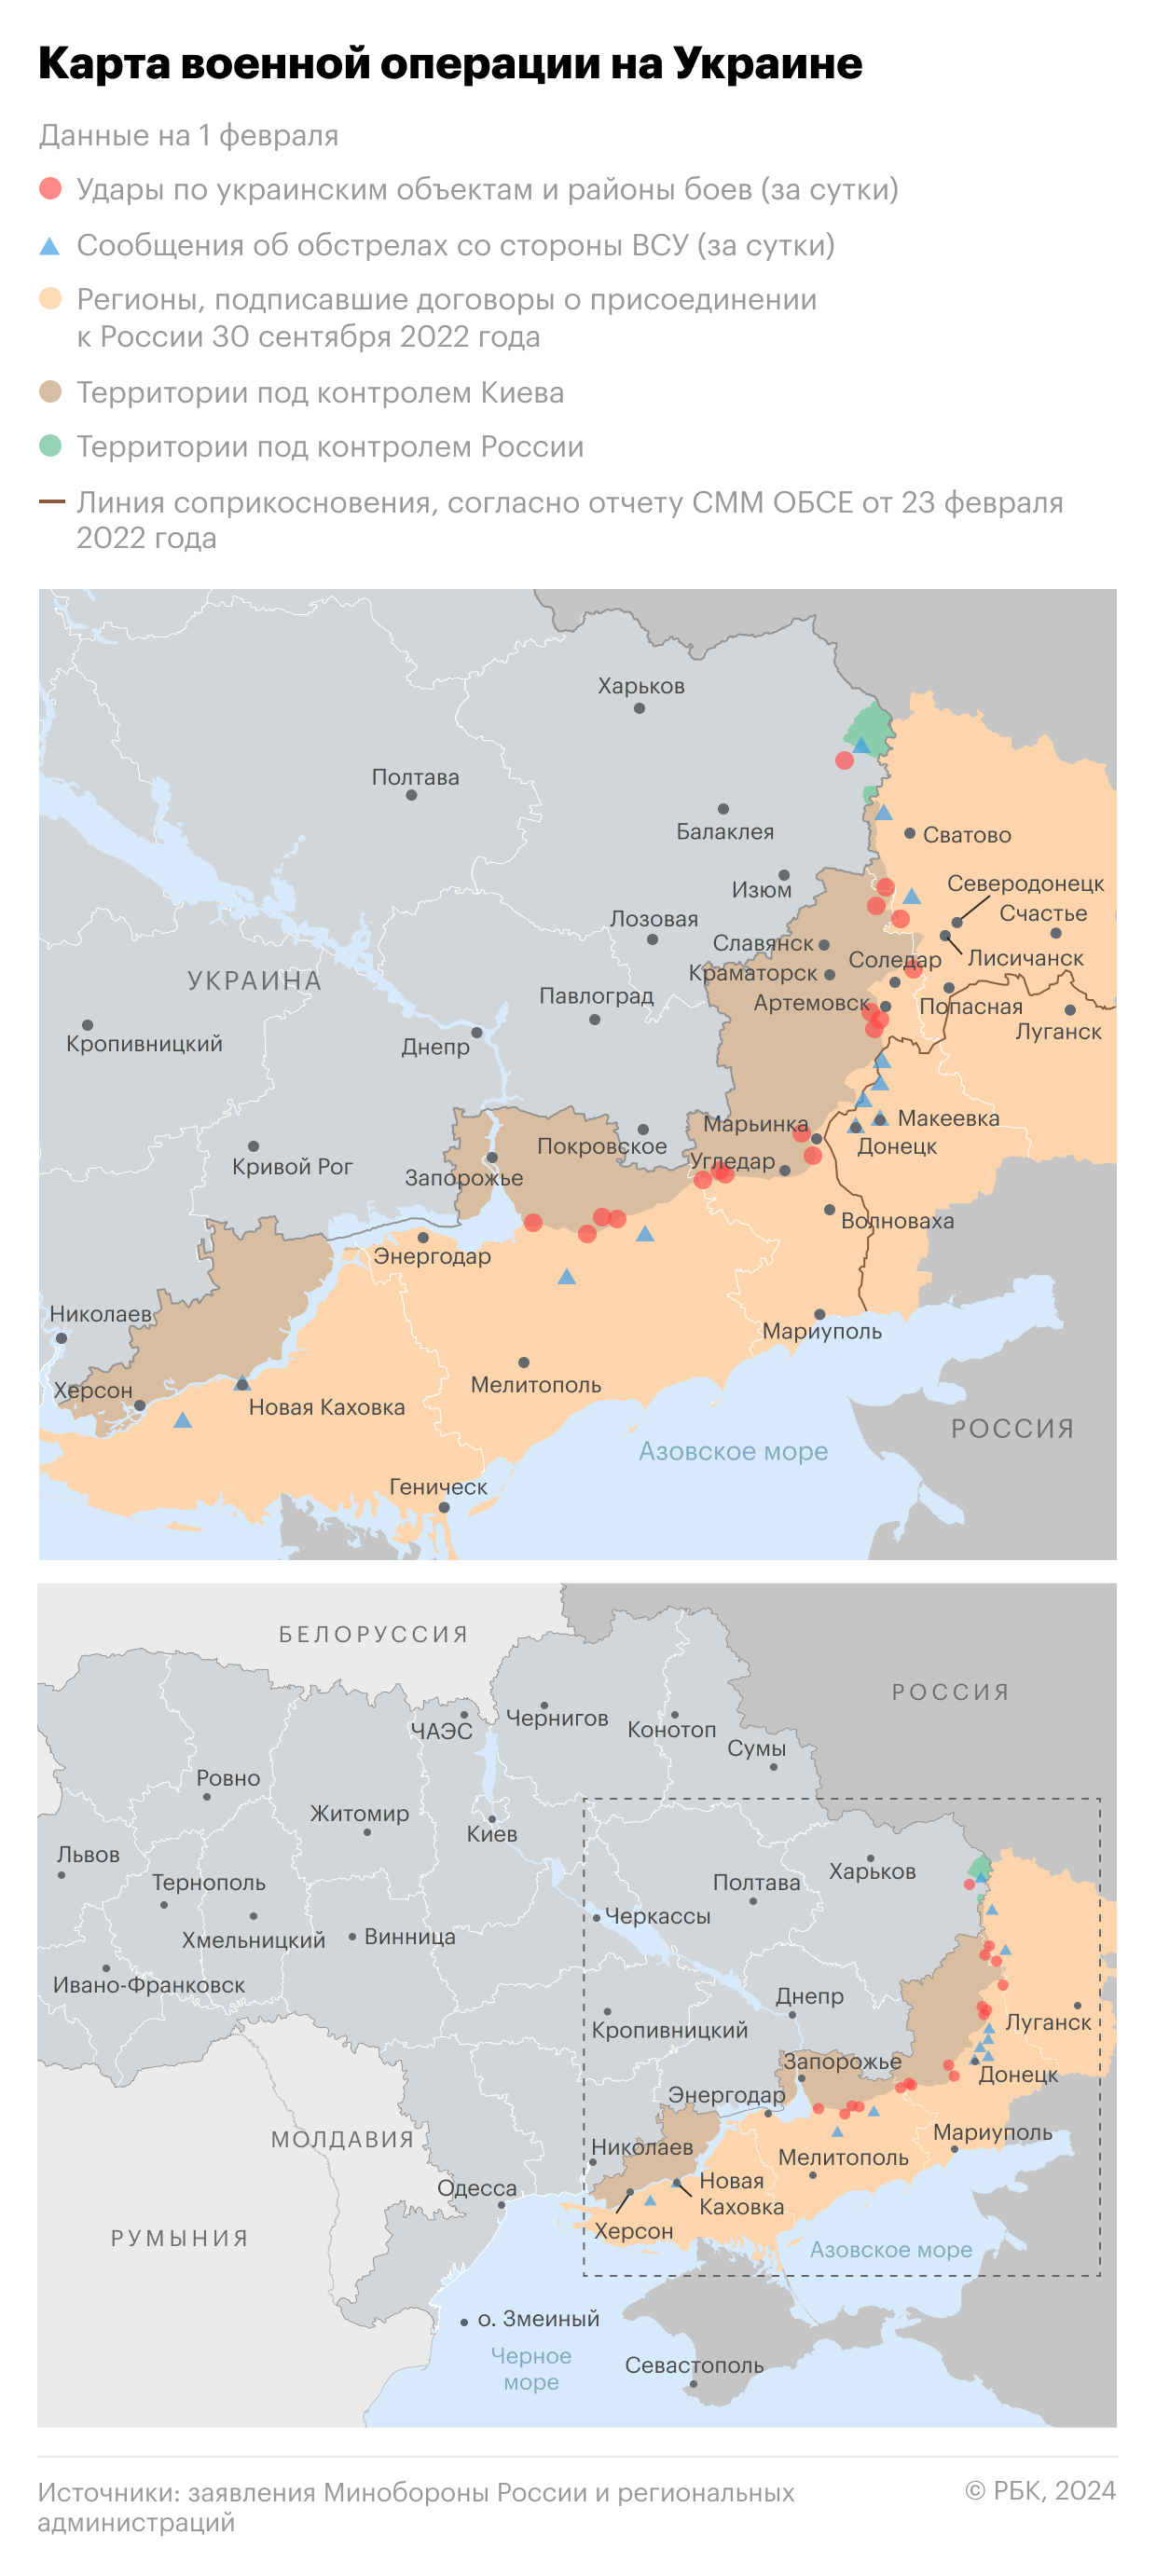 Военная операция на Украине. Карта на 1 февраля"/>













